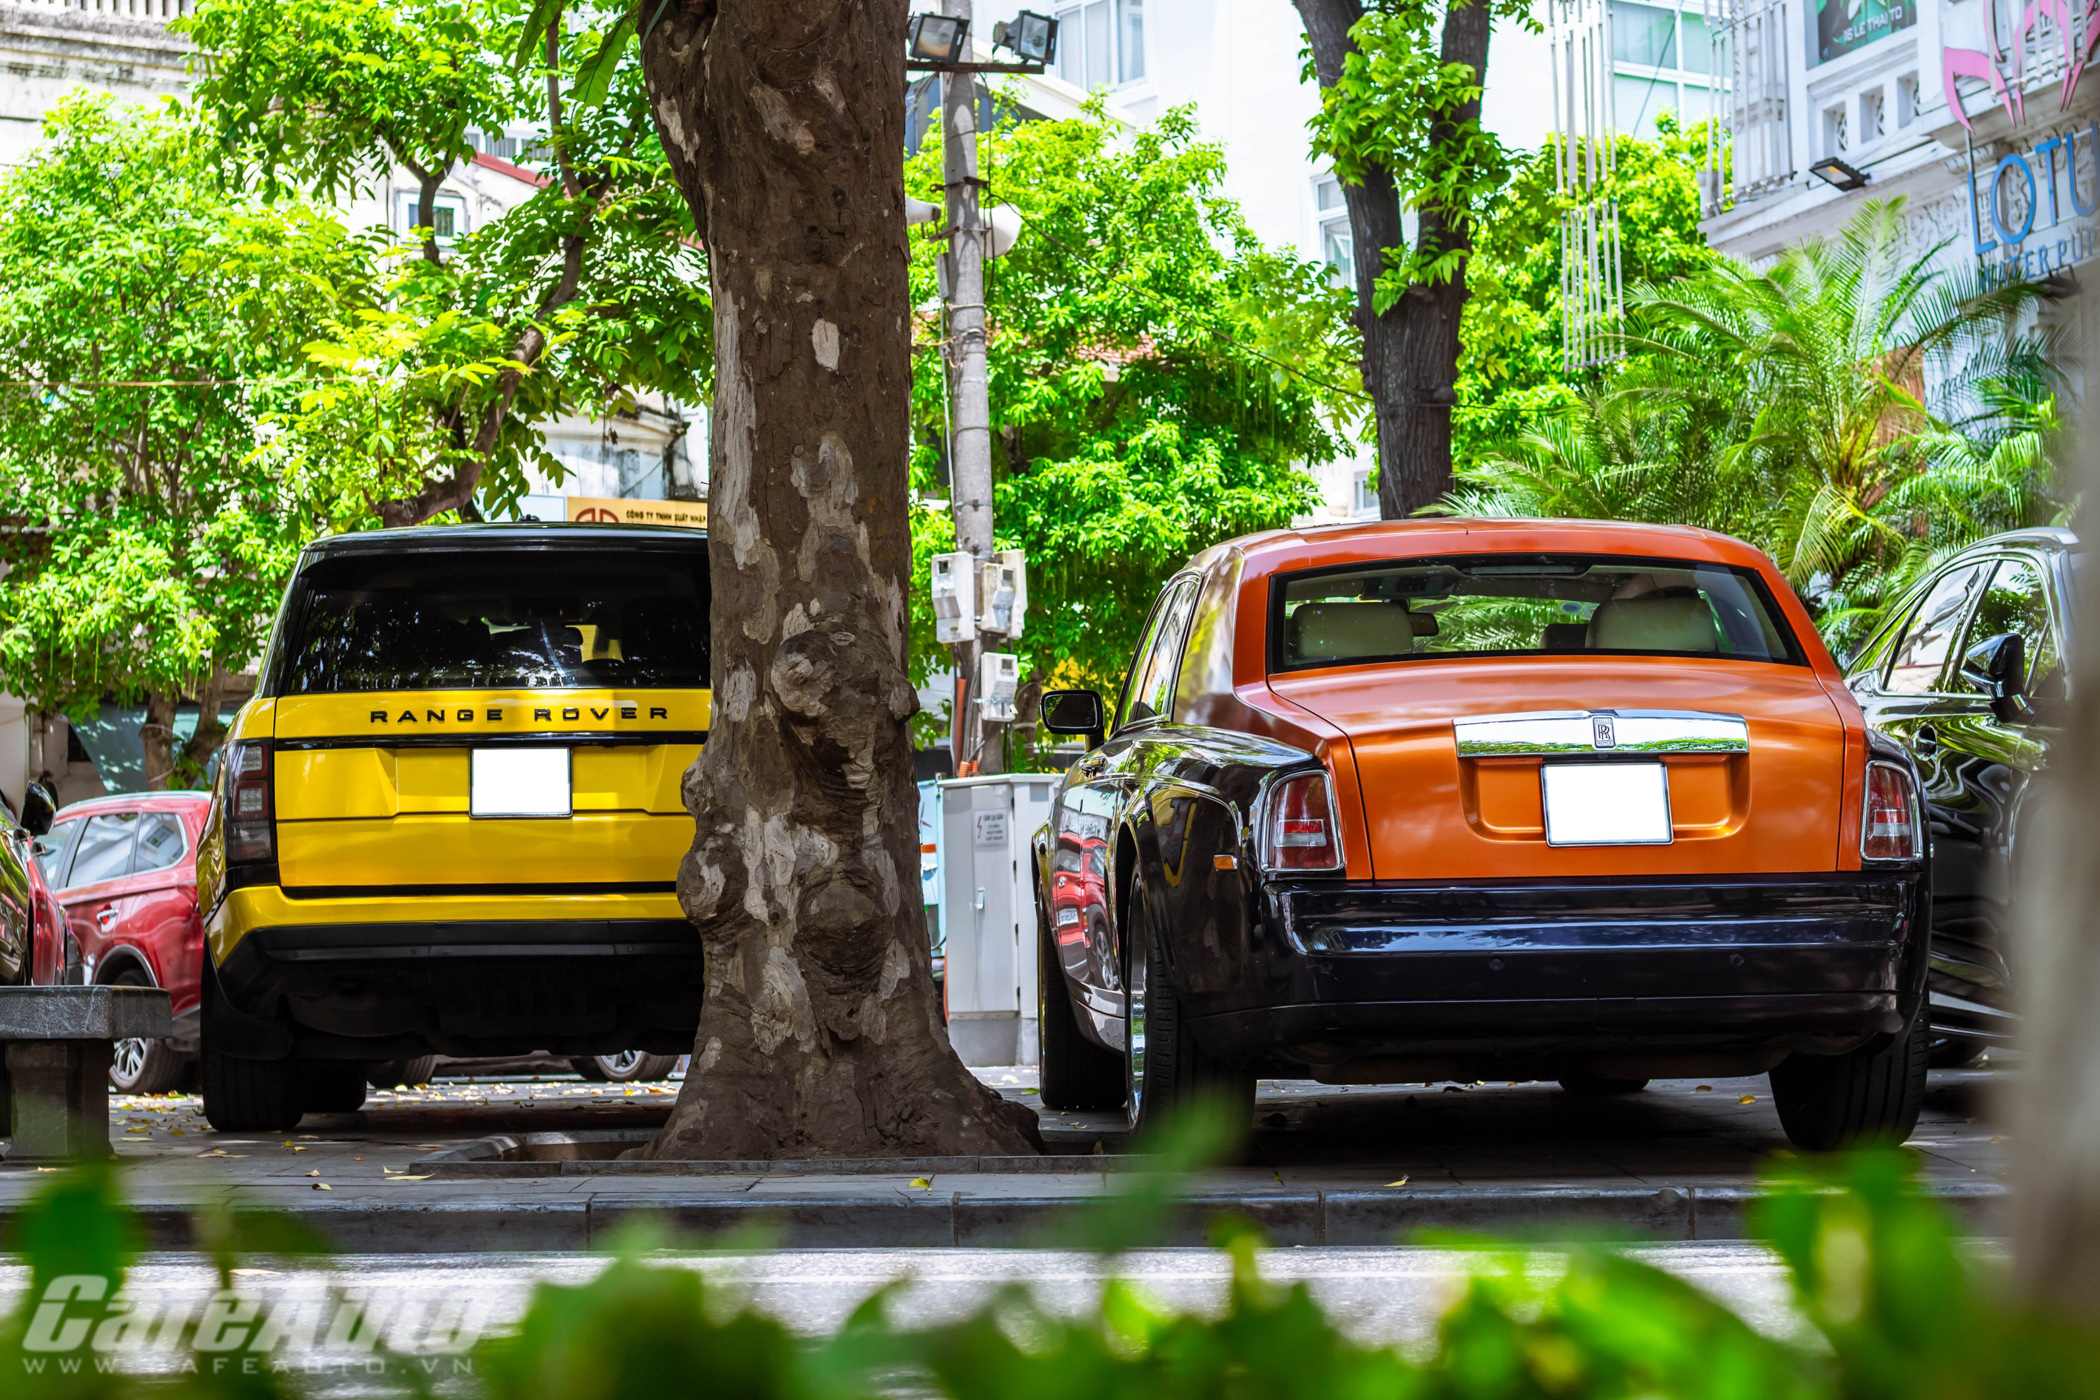 Rolls-Royce Phantom “sánh đôi” cùng Range Rover màu cực dị trên phố Hà Nội